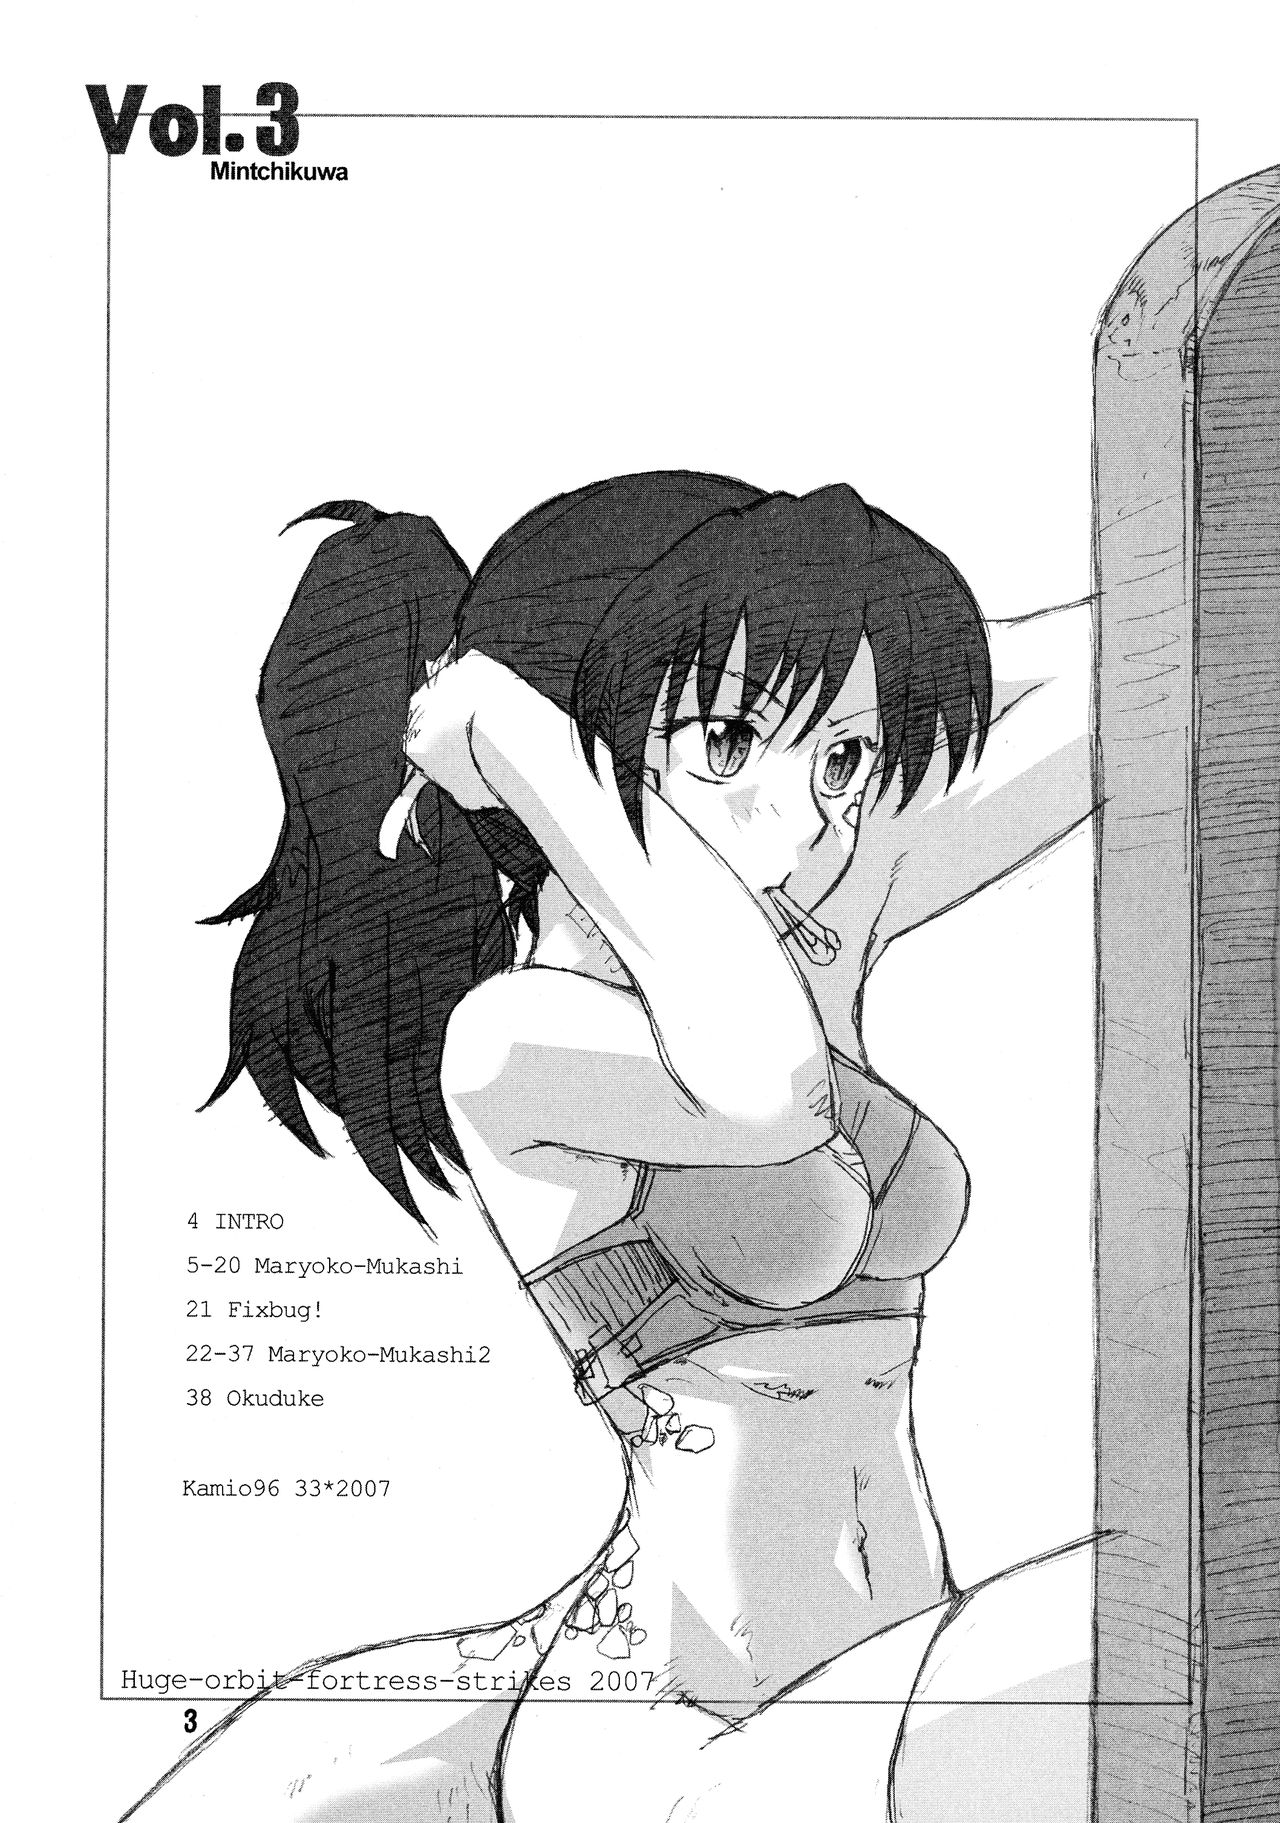 [Kyodai Kidou Yousai Kyoushuu (Kamio 96)] Manga Mintochikuwa vol. 3 2